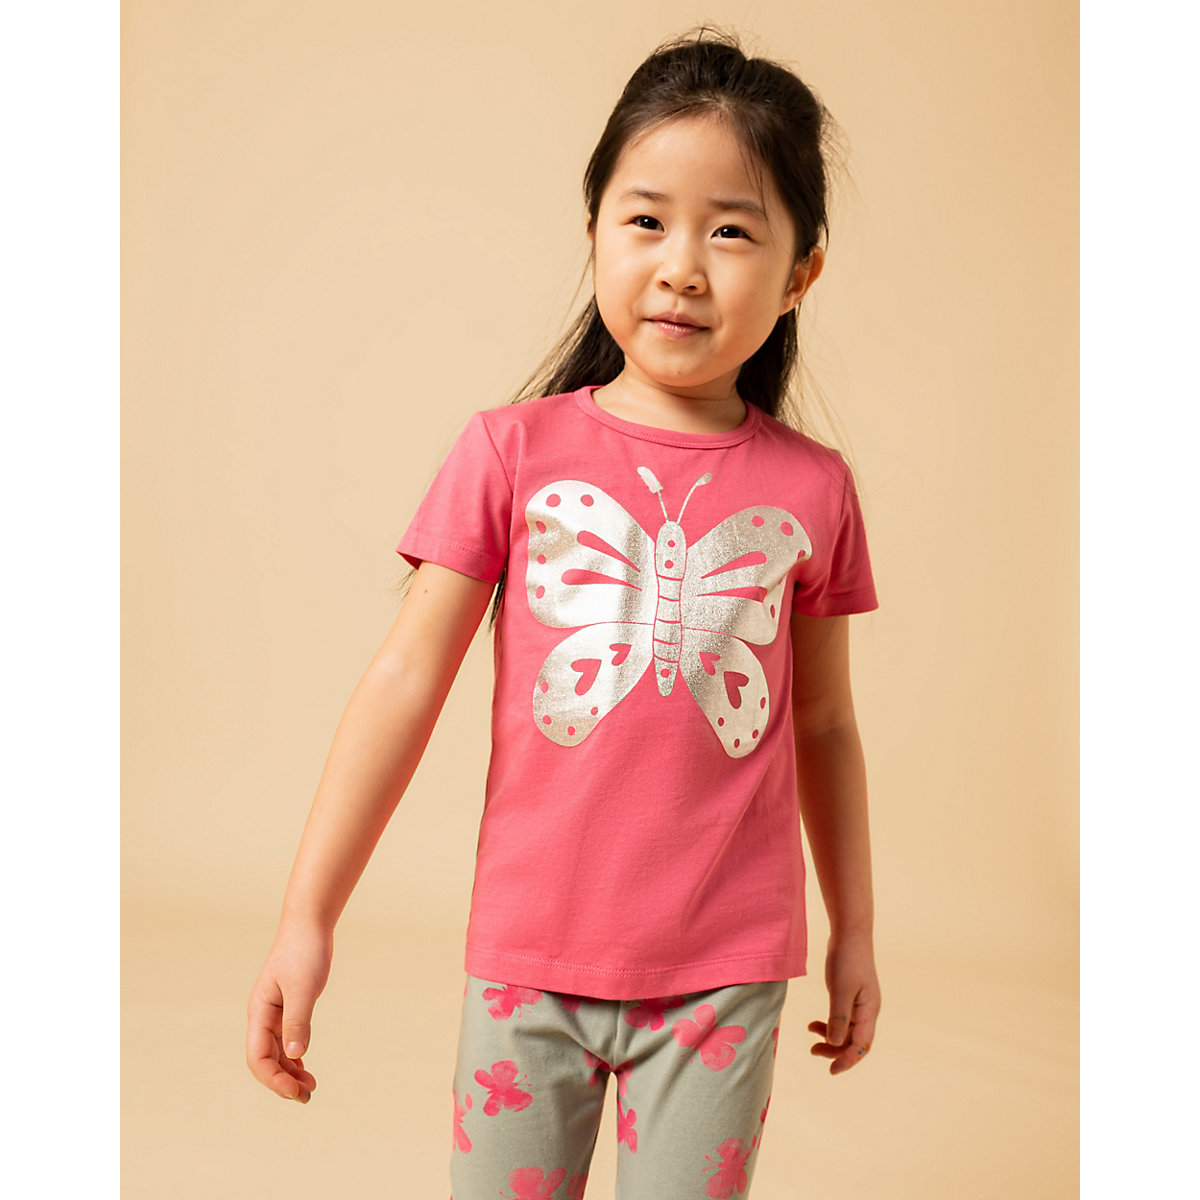 ZAB kids T-Shirt für Mädchen von ZAB kids pink